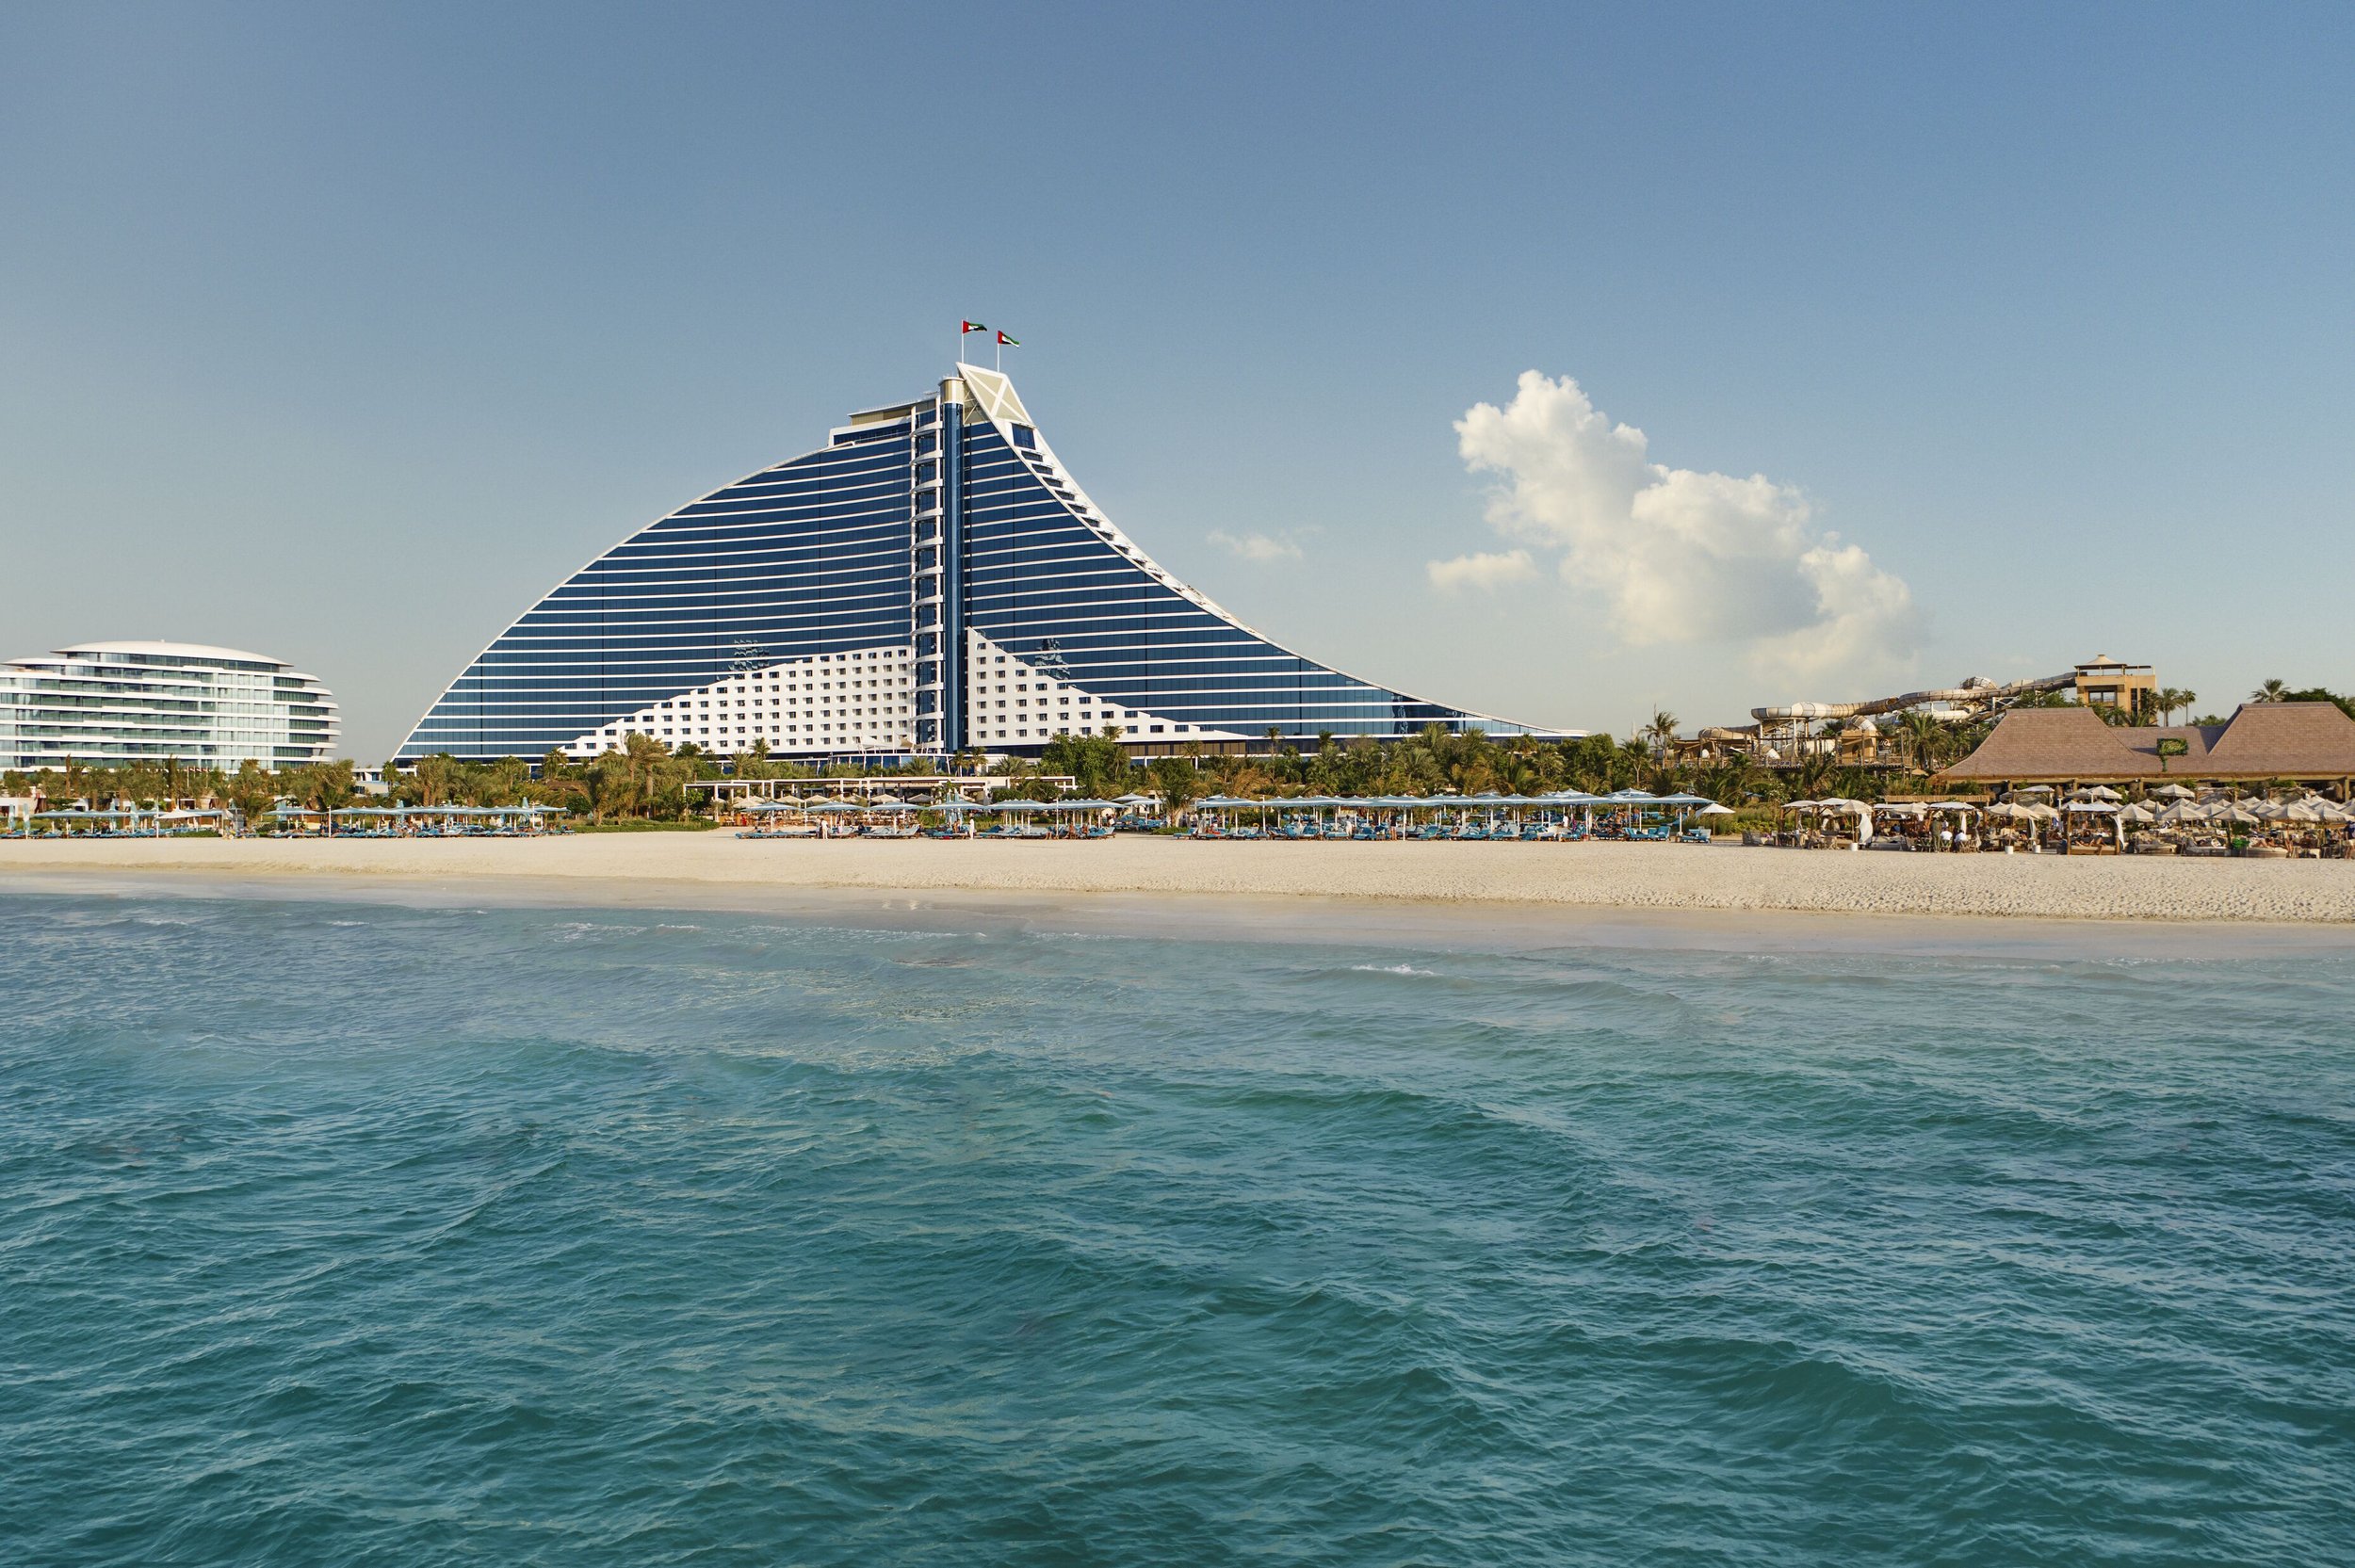 Medium_resolution_150dpi-Jumeirah Beach Hotel - Architecture - Beach - Main.jpg